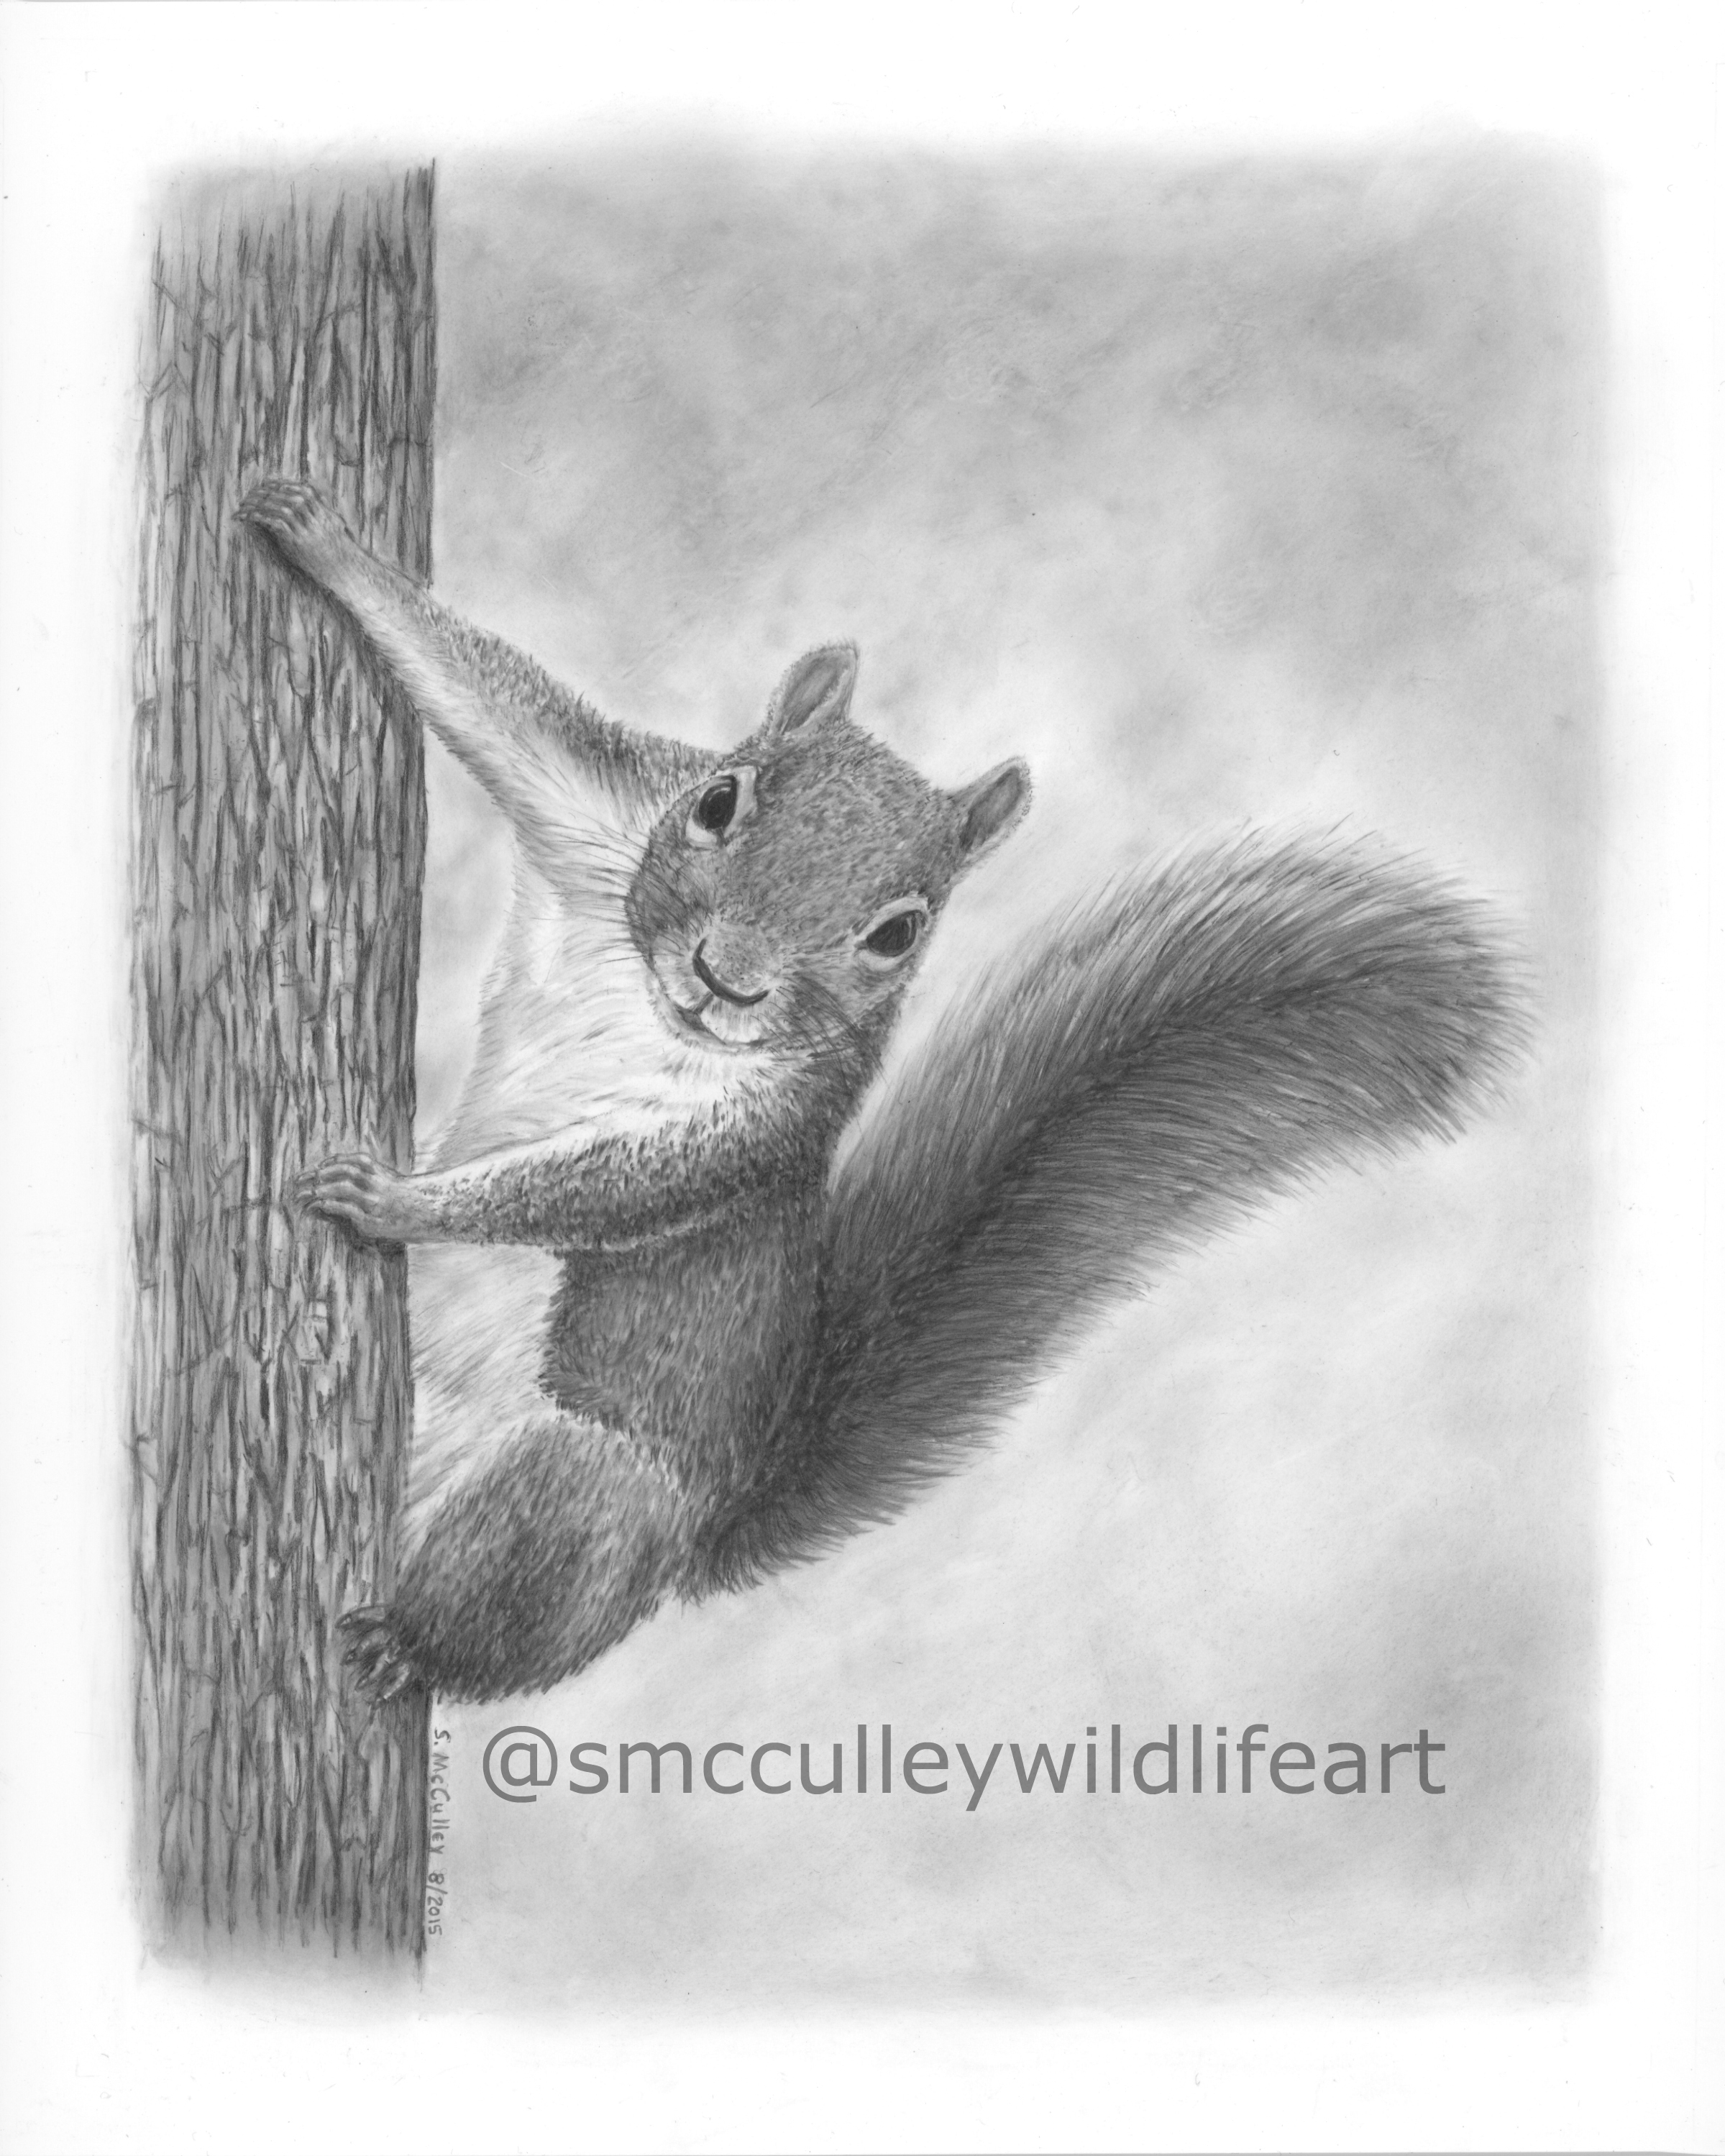 Squirrel (commission)